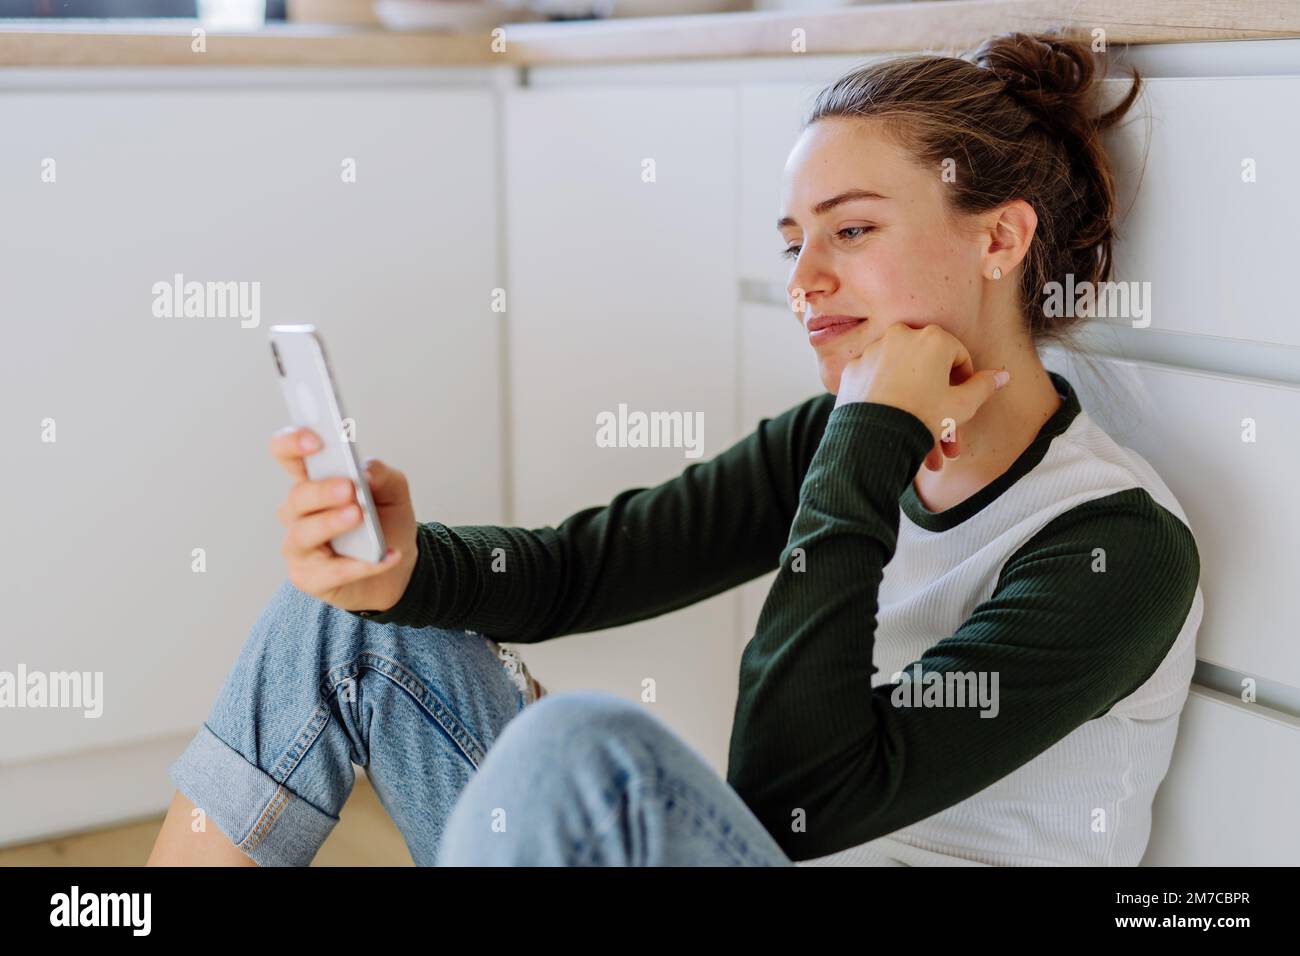 Junge Frau sitzt mit Smartphone und scrollt in einer Küche. Stockfoto